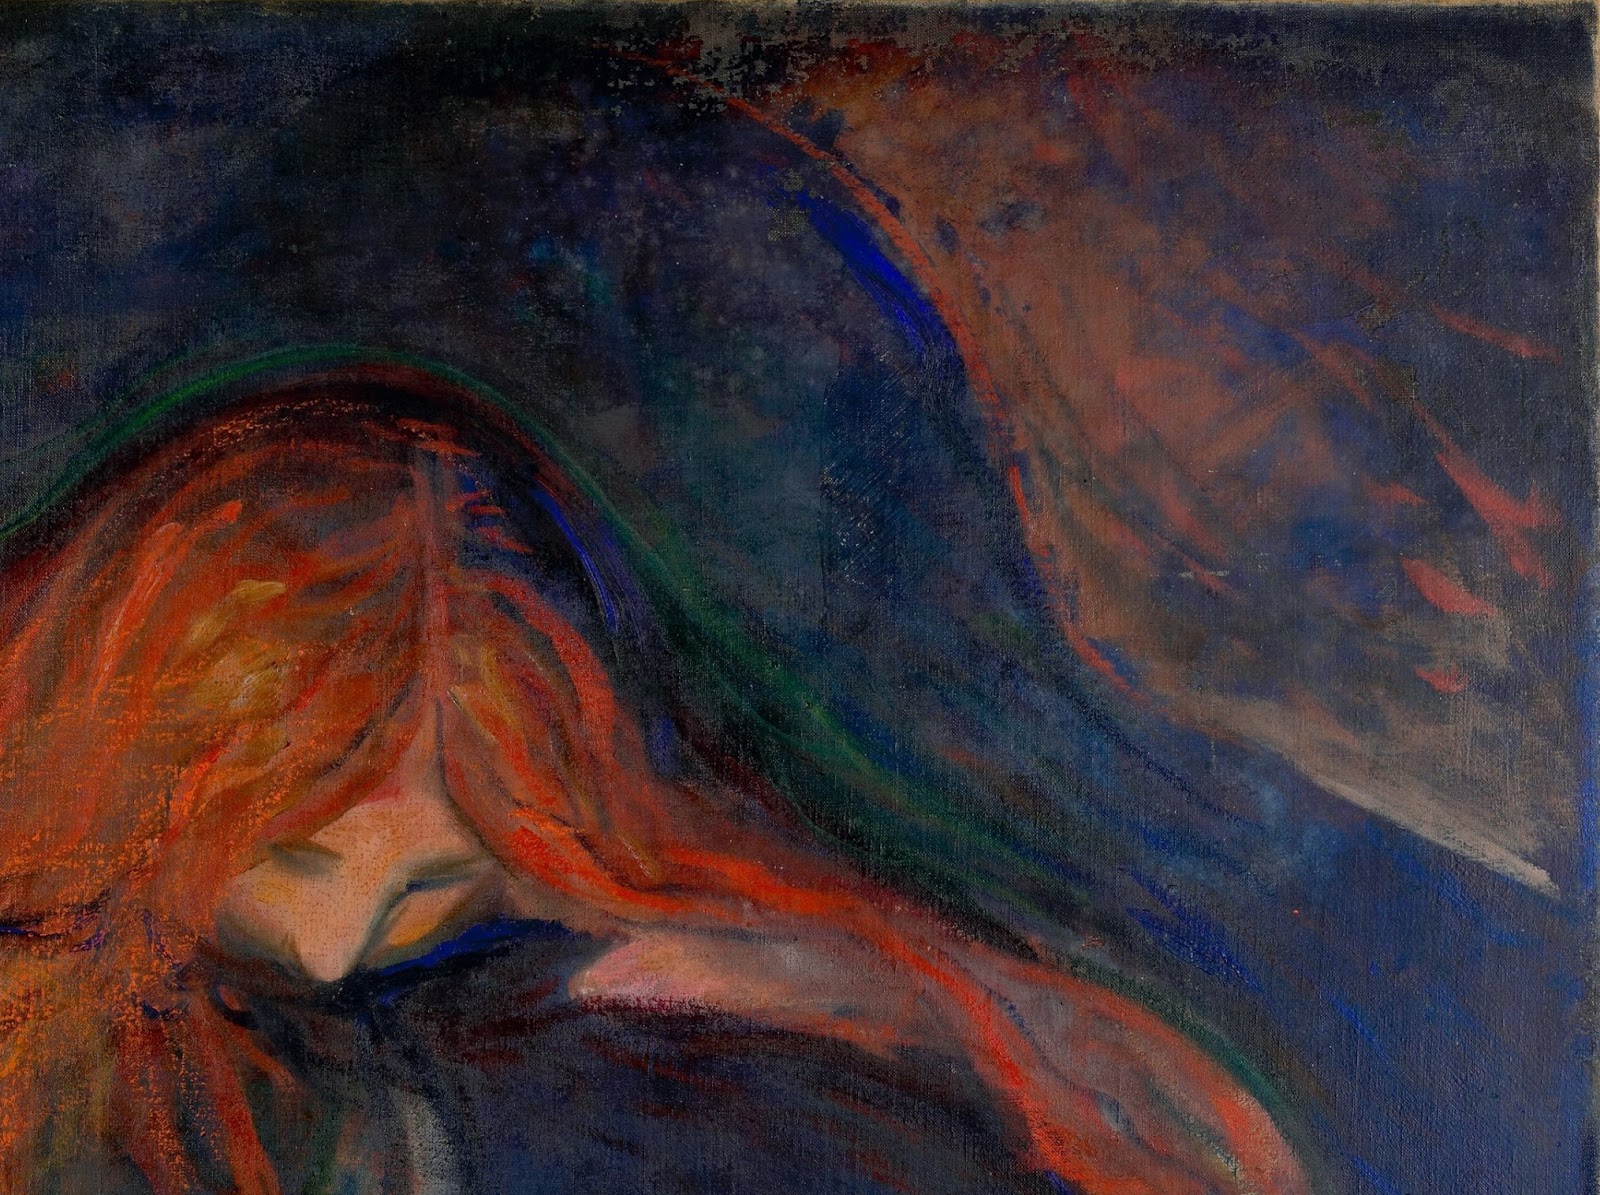 Edvard+Munch-1863-1944 (84).jpg